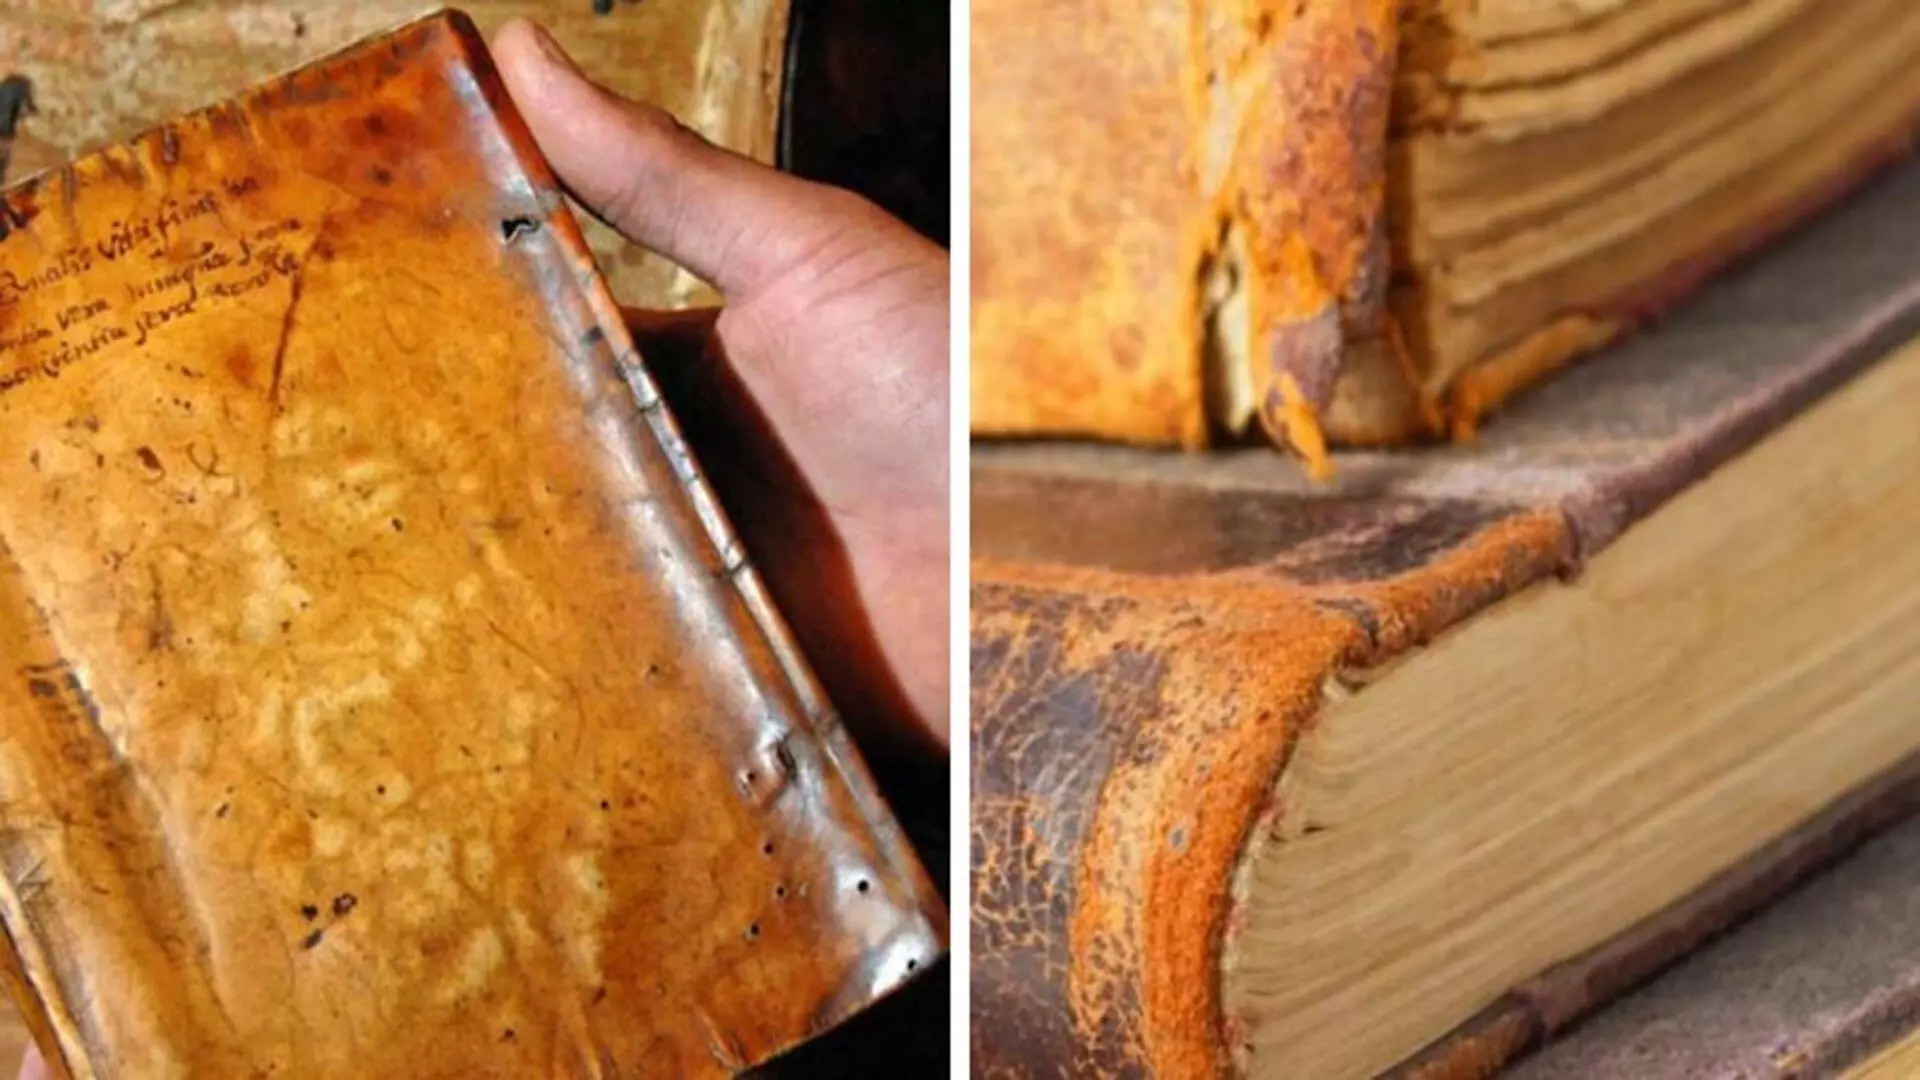 हार्वर्ड लाइब्रेरी द्वारा हटाई गई 19वीं सदी की किताब को बांधने के लिए इस्तेमाल की जाने वाली मानव त्वचा